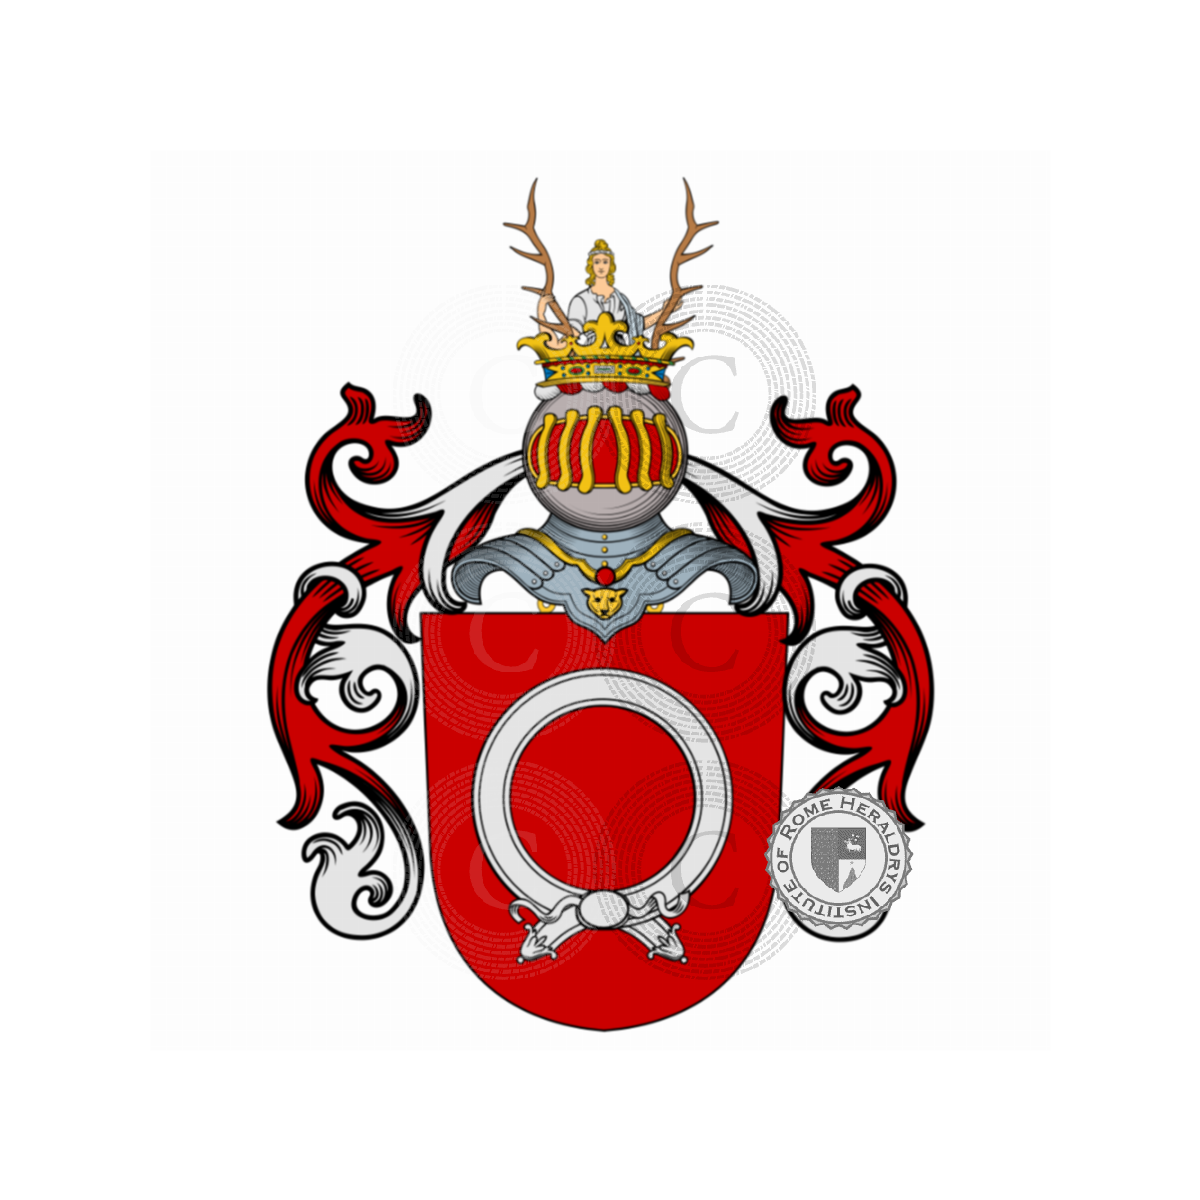 Escudo de la familiaBoccella, Boccella,Bucelli